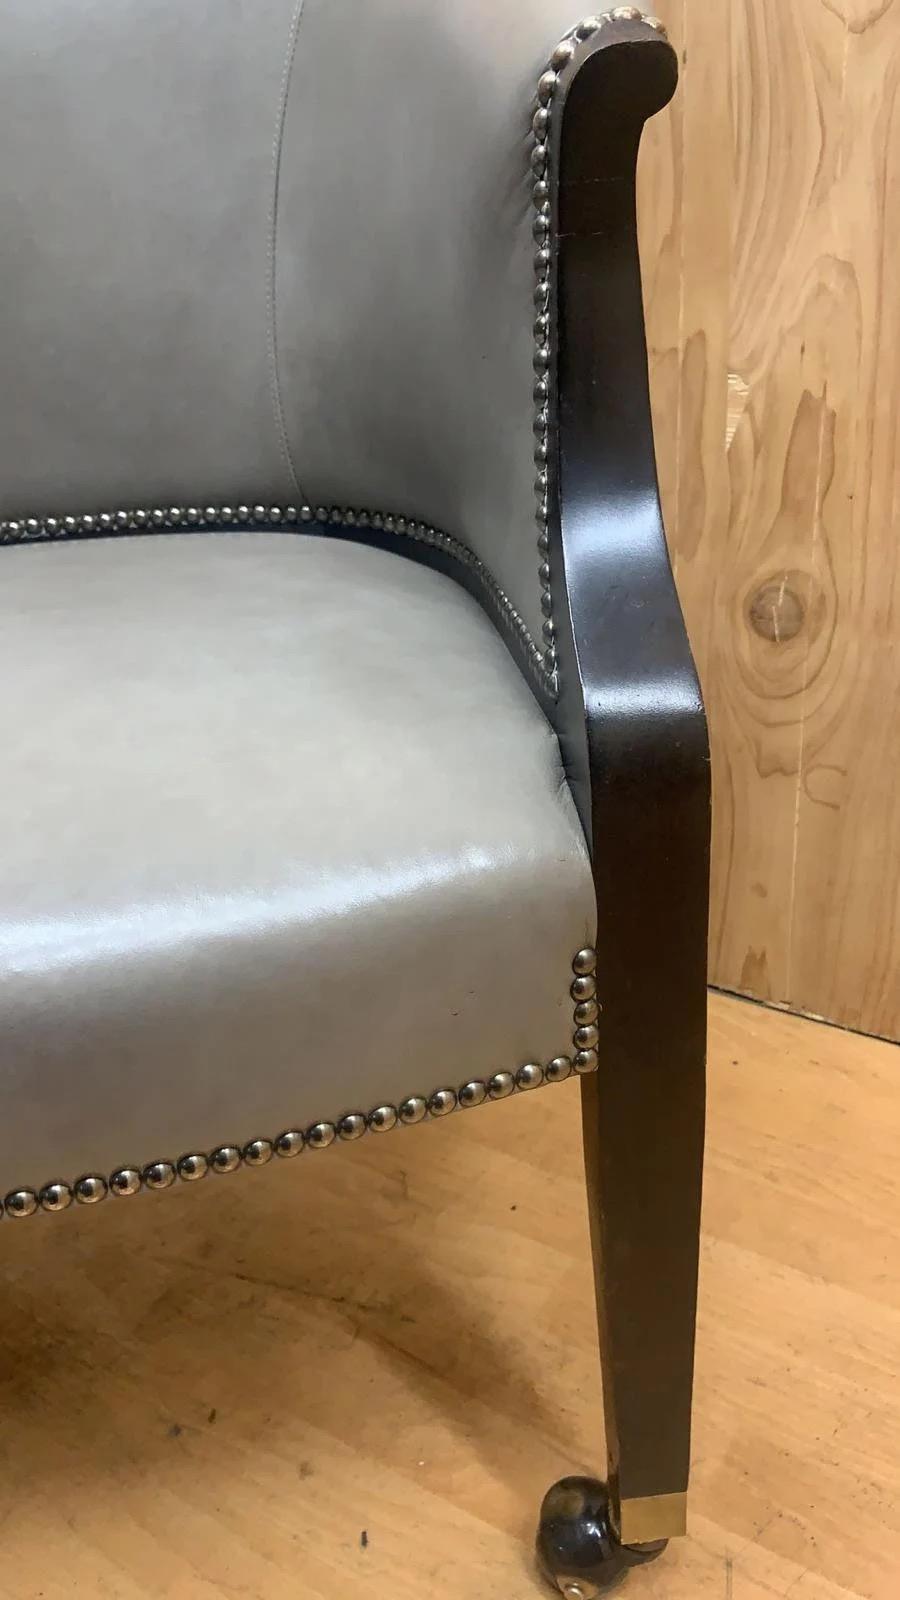 Klassischer Vintage Castered Barrel Back Side-Chair  mit grauem ebonisiertem Gestell, gepolstert mit grauem Original-Vollnarbenleder von Howard Lorton Furniture & Design's Hickory Chair

Der Hickory Chair hat eine klassische Form A, die von der